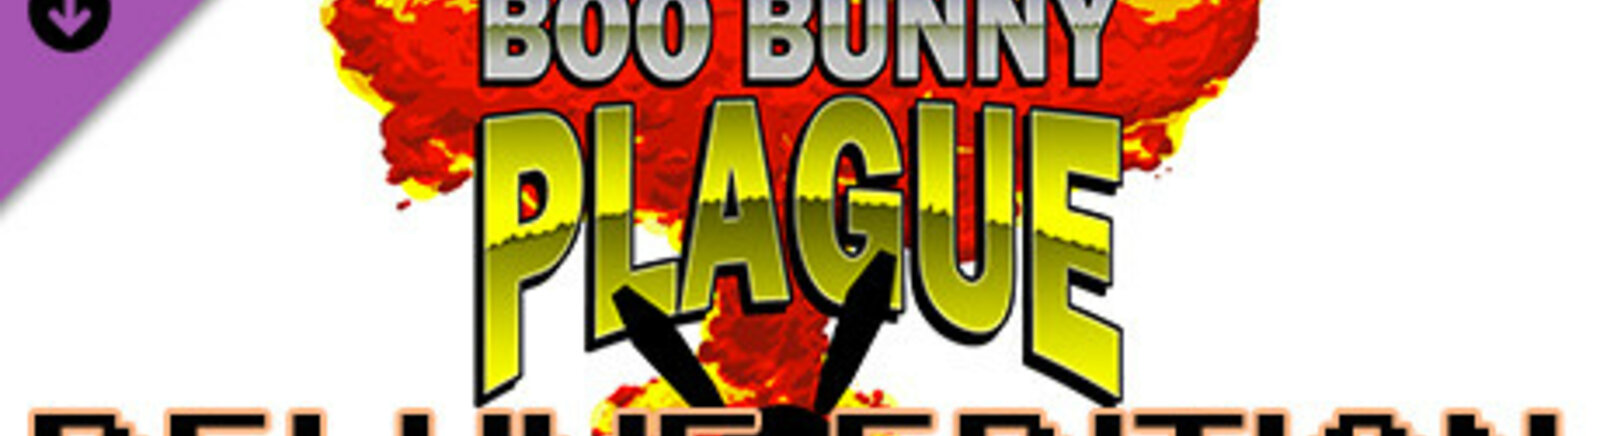 Дата выхода Boo Bunny Plague  на PC, Mac и Linux в России и во всем мире